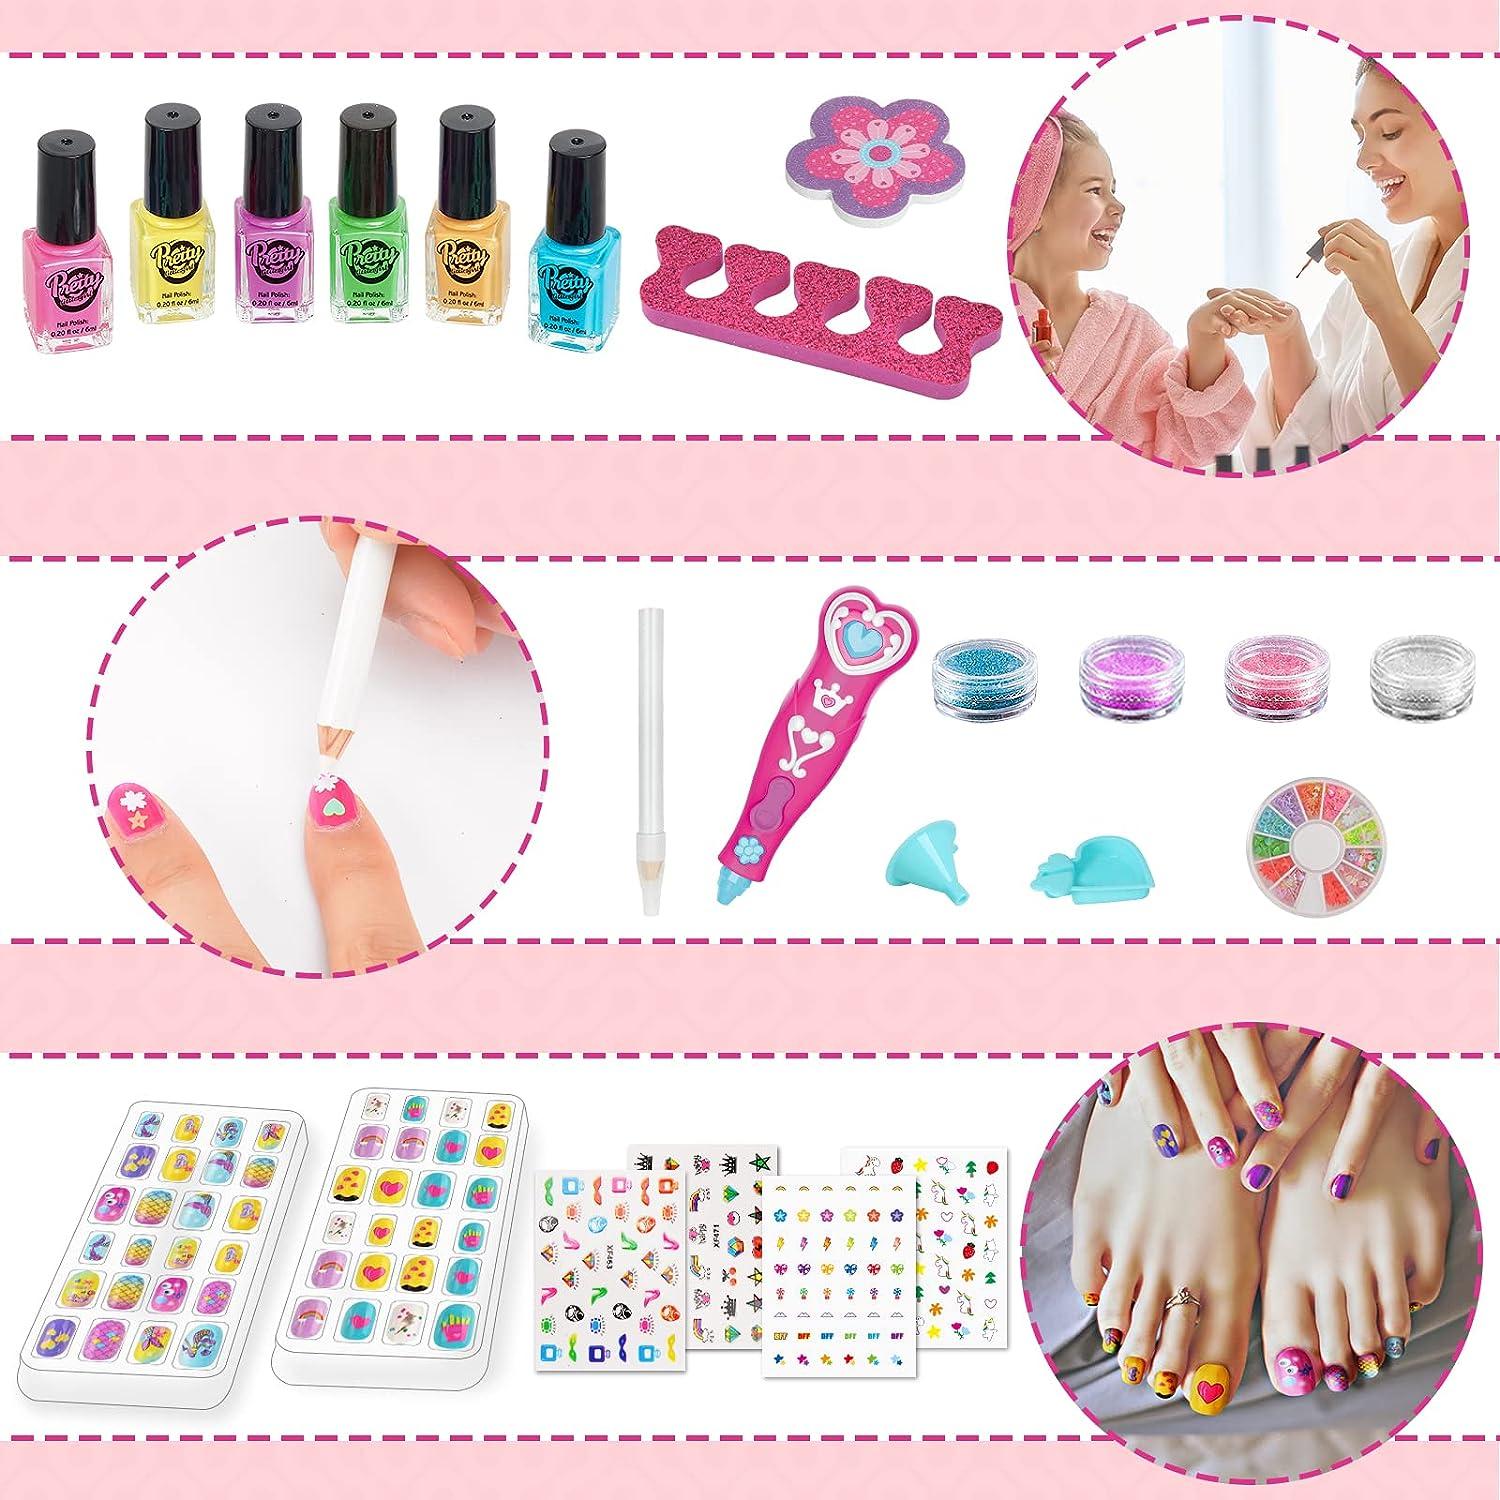 Nail Polish Kit for Girls Ages 7-12, Kids Nail Polish Set for Girls with  Nail